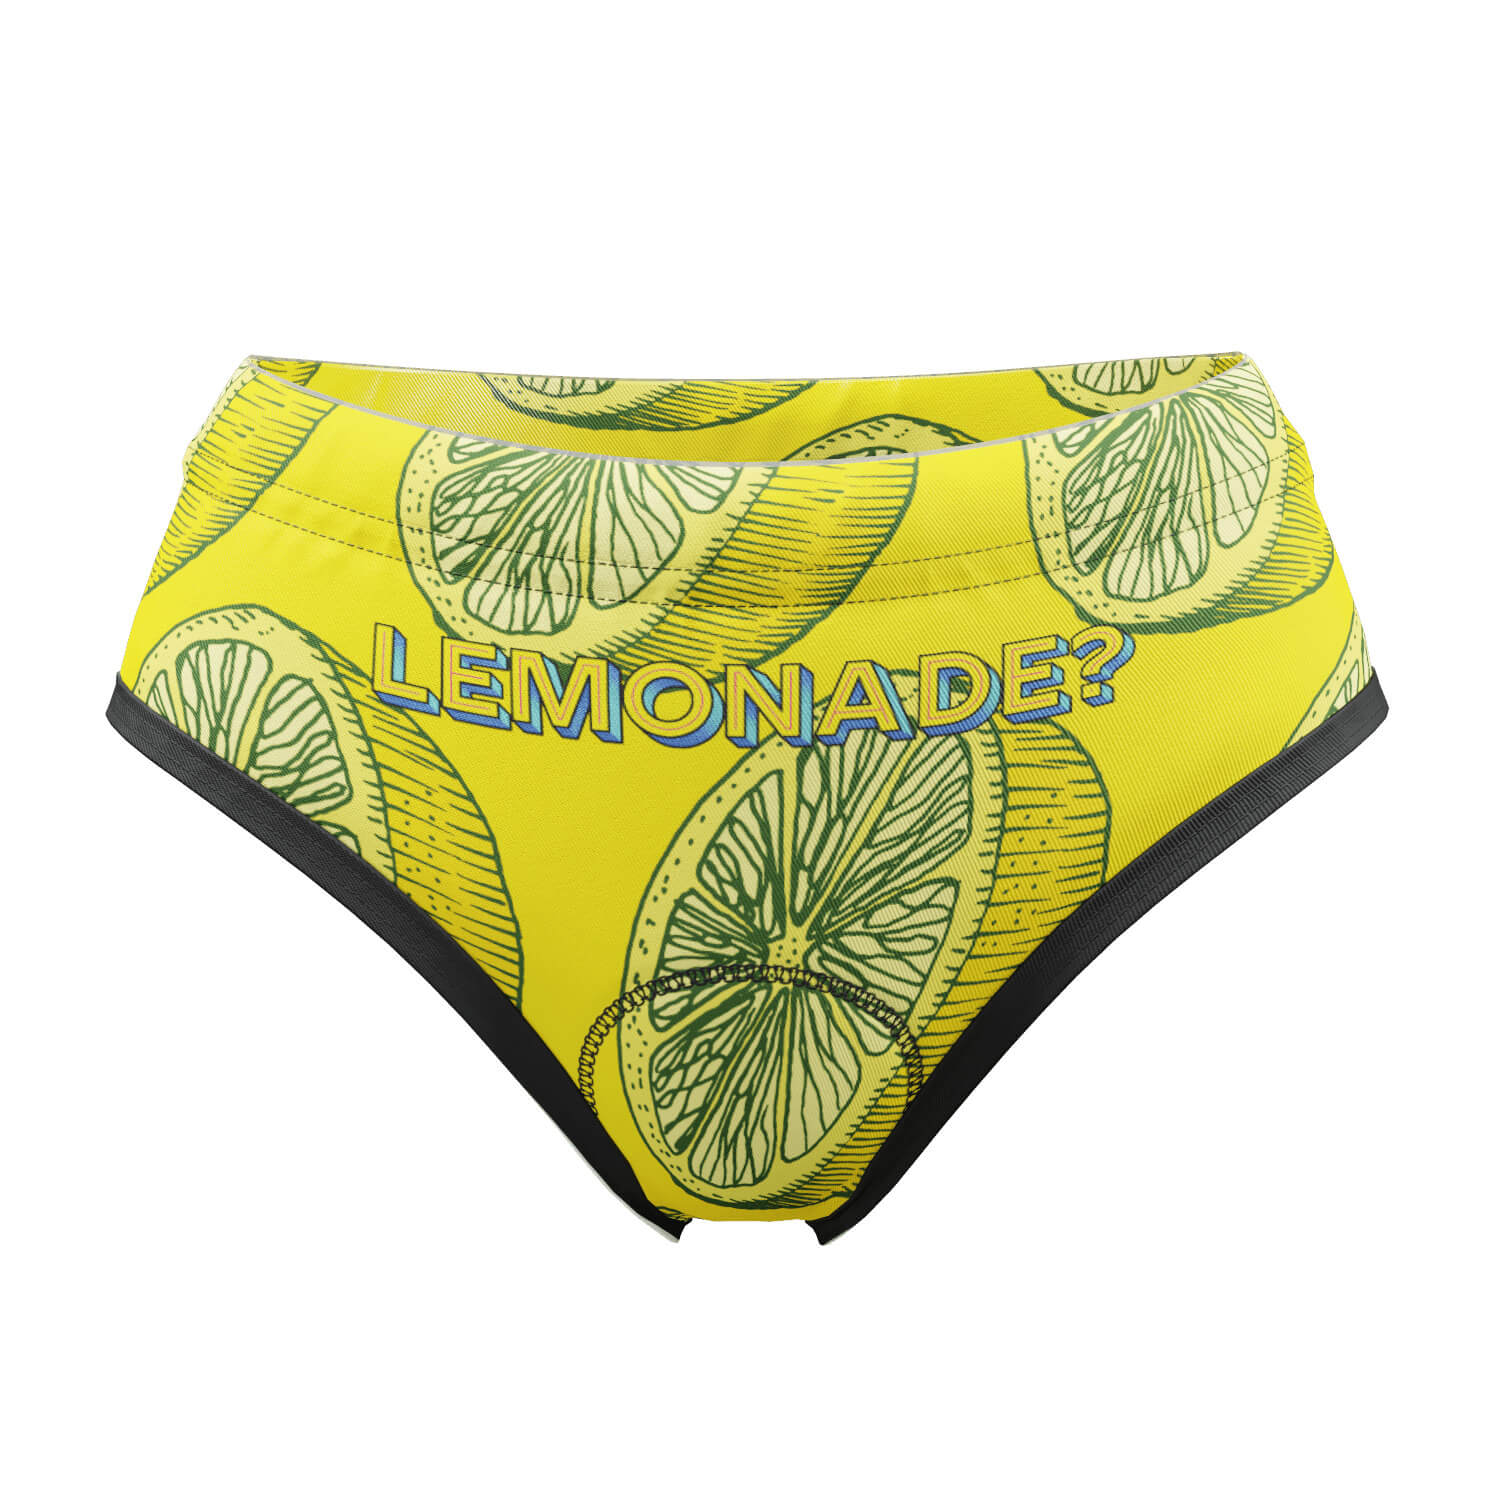 http://www.onlinecyclinggear.com/cdn/shop/products/lemonade-briefs-womens-briefs-underwear-0-yellow-feature.jpg?v=1628818709